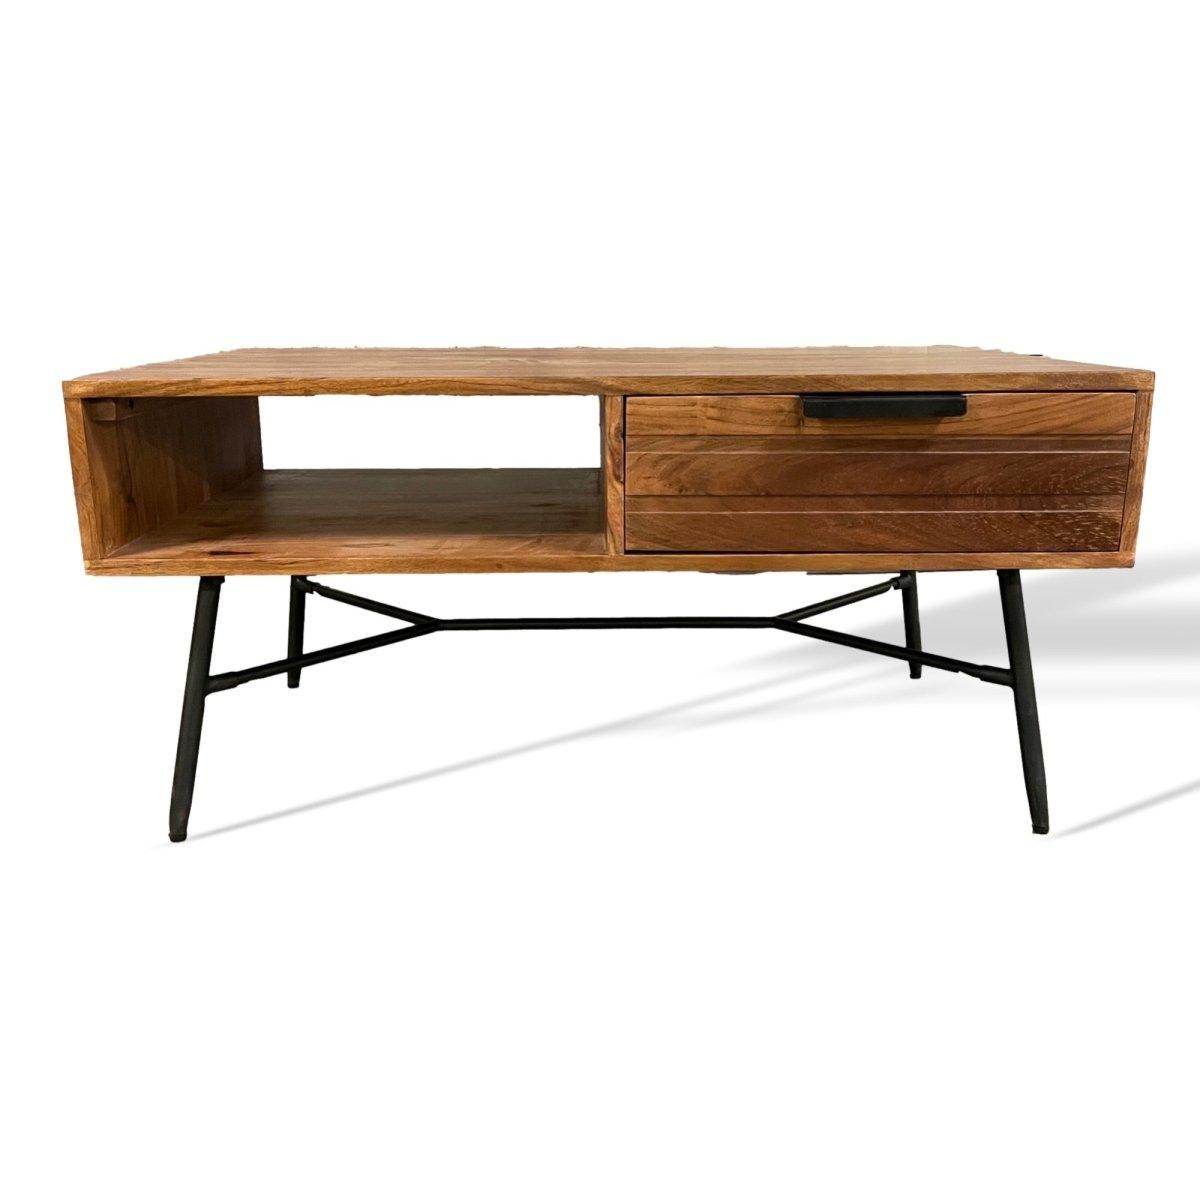 Table basse en bois d'acacia de yoga - Outlet de meubles rustiques